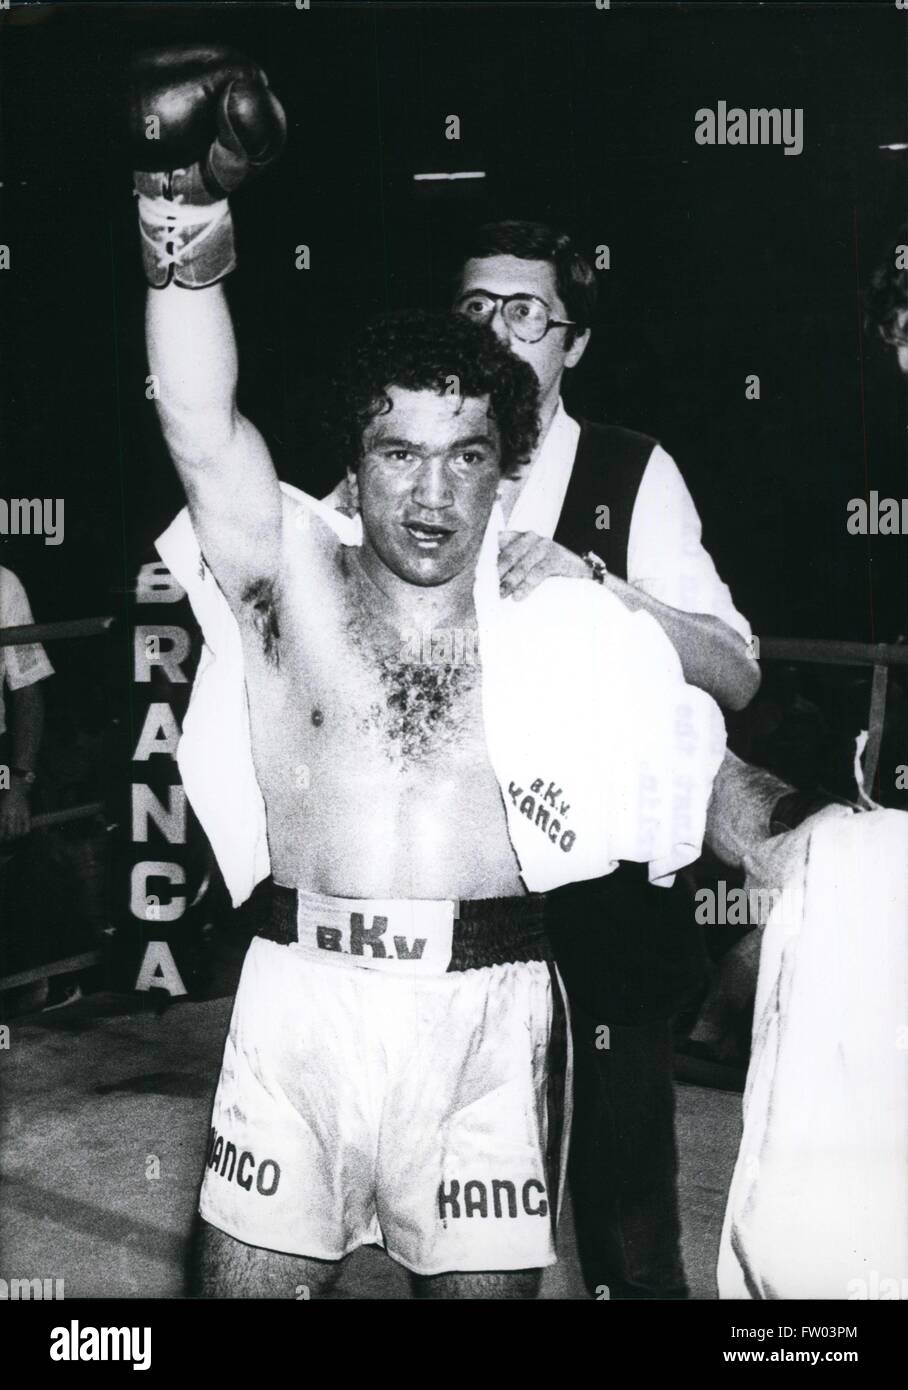 1977 - boxer italiano Rocco Rocky Mattioli che nel mese di agosto si lotta contro il campione tedesco Eckenhard Dagge a Berlino. © Keystone Pictures USA/ZUMAPRESS.com/Alamy Live News Foto Stock